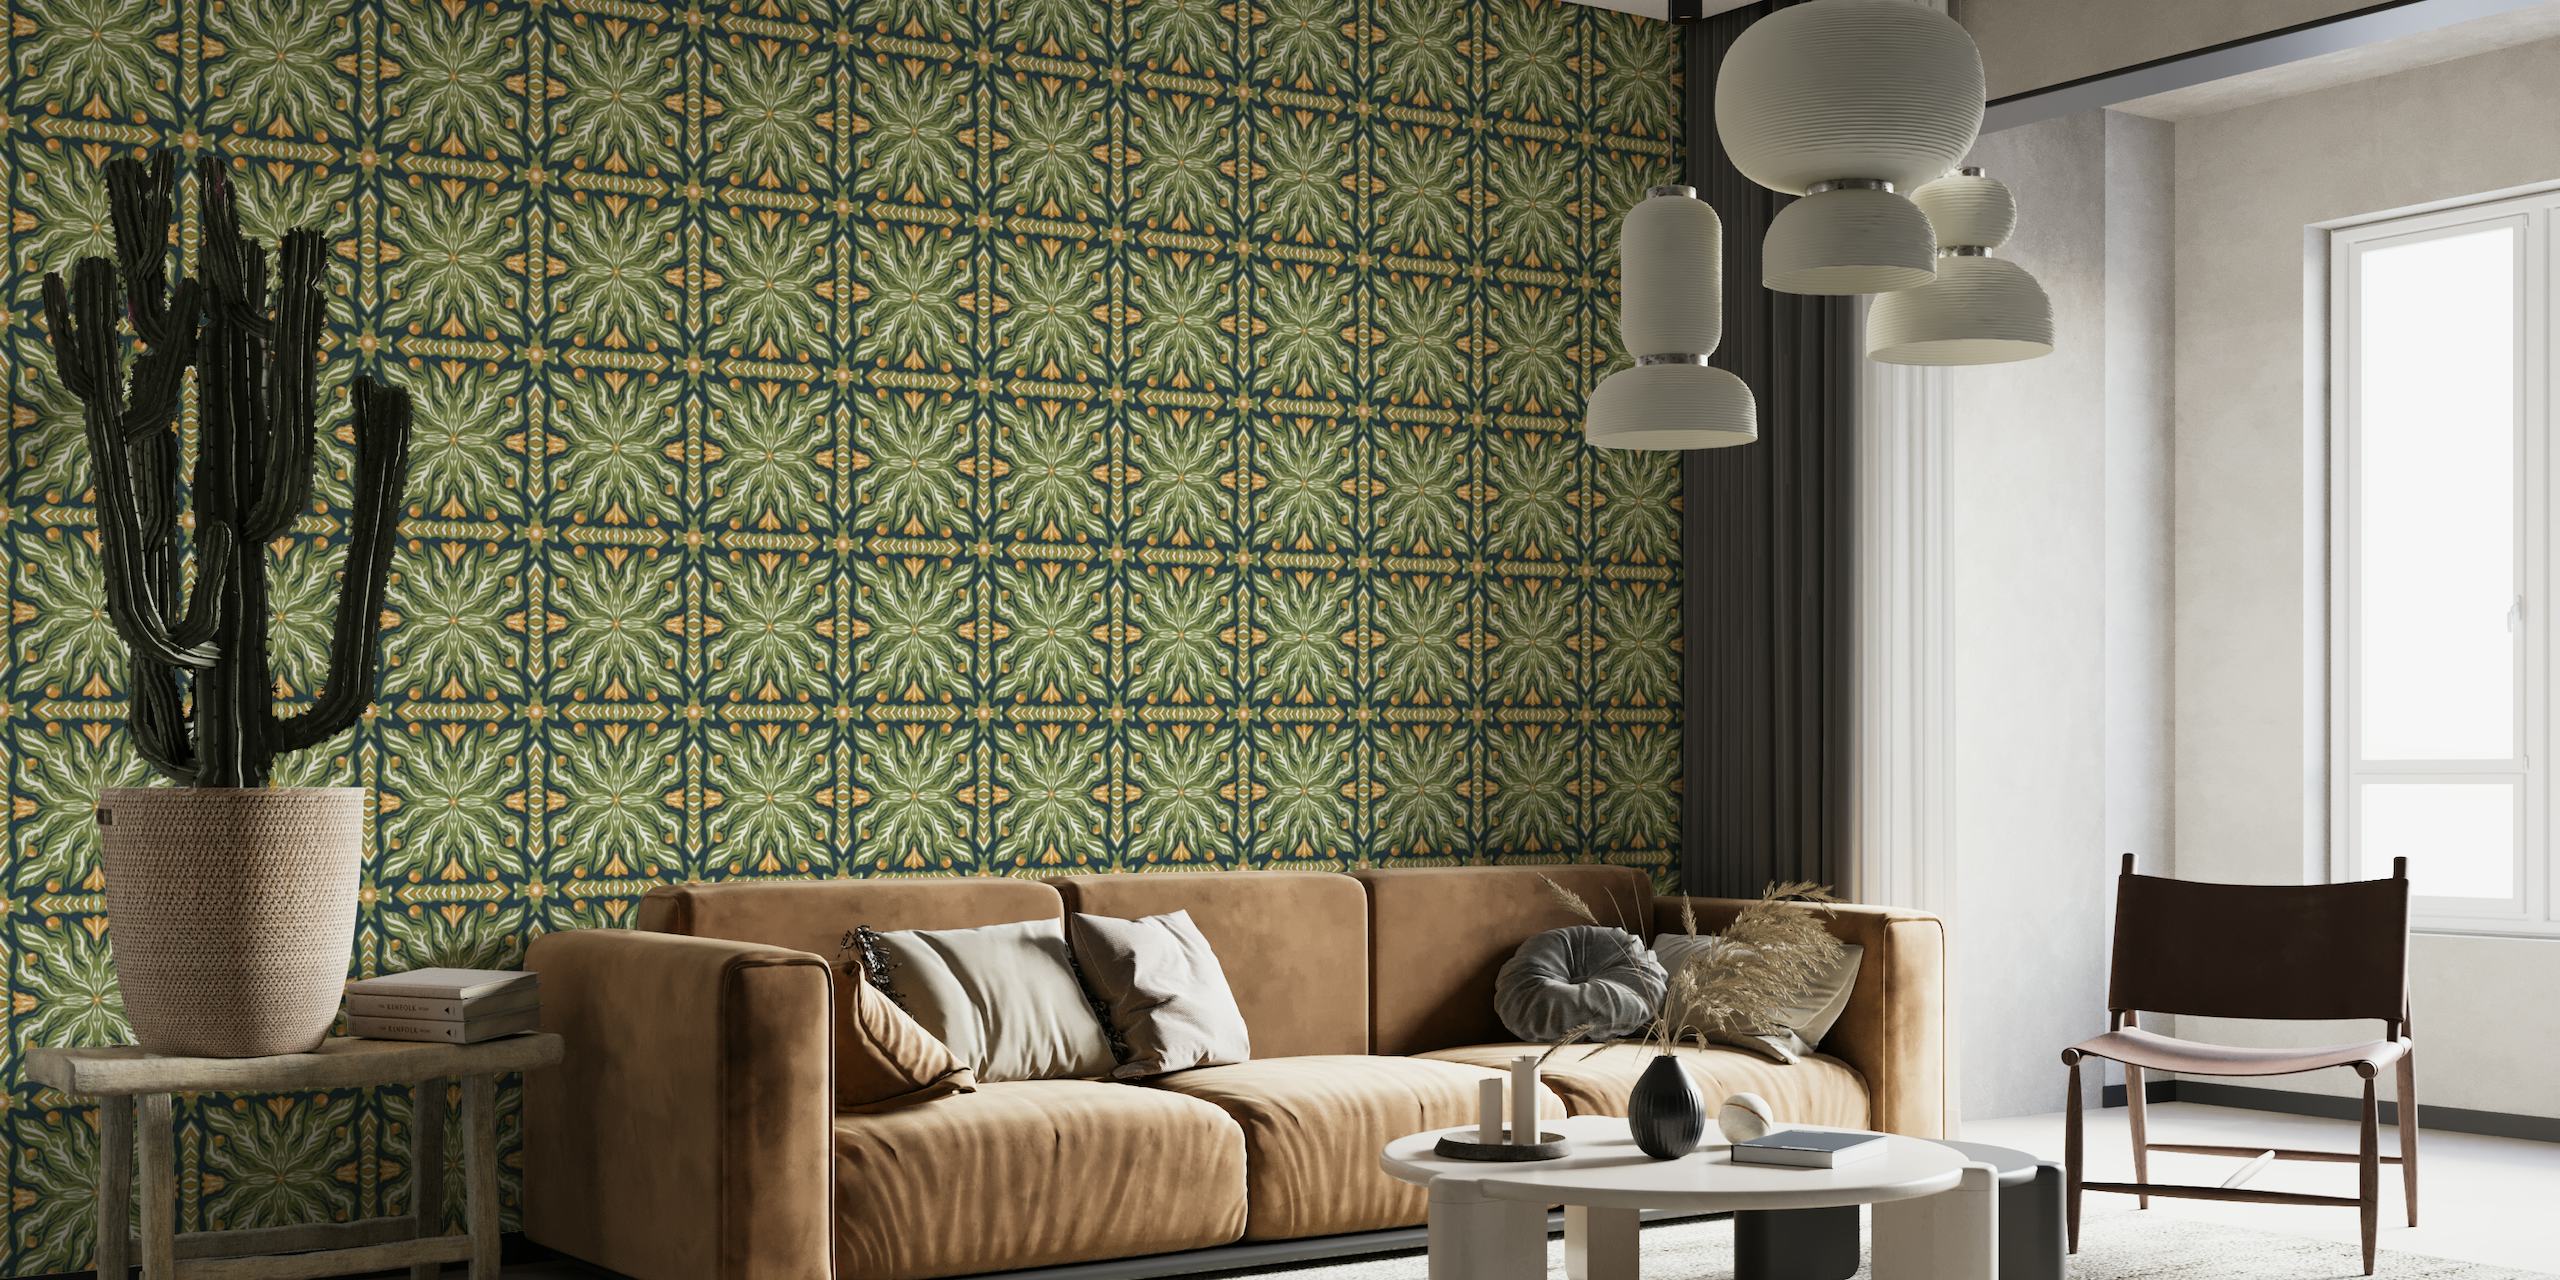 Fotomural vinílico de parede verde simétrico com padrão de jardim com designs intrincados inspirados na natureza e detalhes dourados.